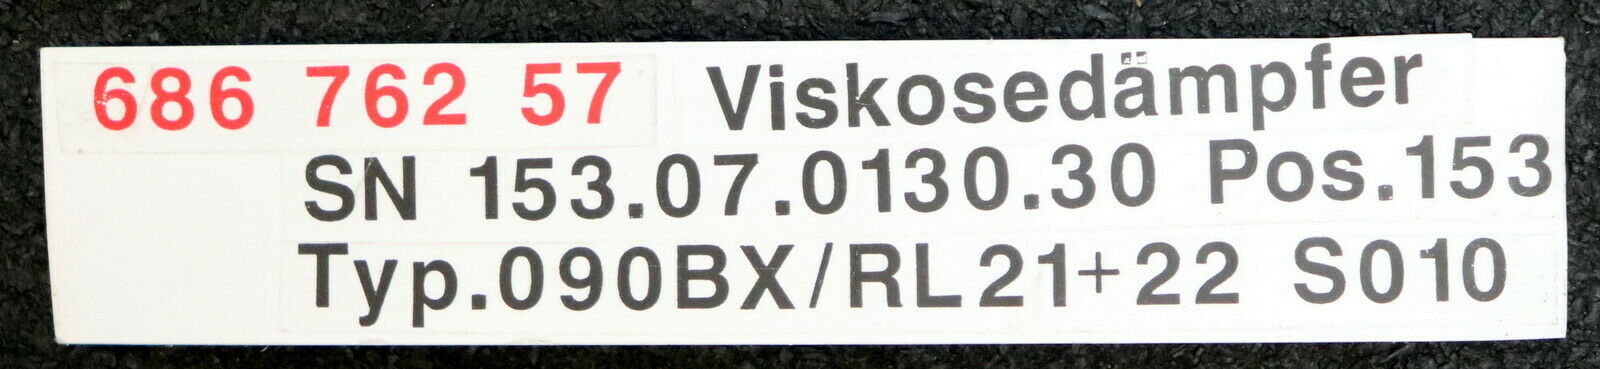 SEMPELL Viskosedämpfer SN153 Typ 090BX für Ventil 21-22 S 10 RL 23 S93 - 20bar